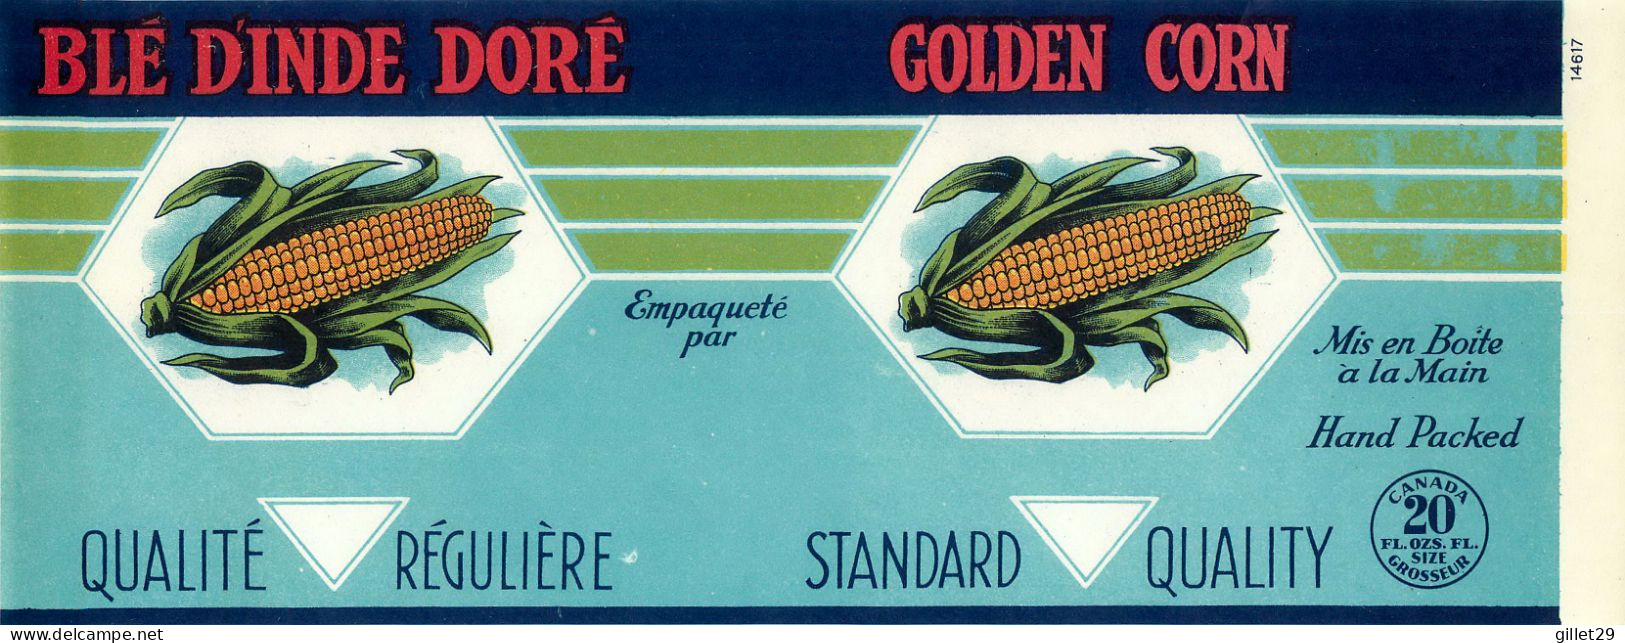 ÉTIQUETTES - BLÉ D'INDE DORÉ - GOLDEN CORN - 20 OZS CANADA - DIMENSION 11 X 27 Cm - - Fruits Et Légumes